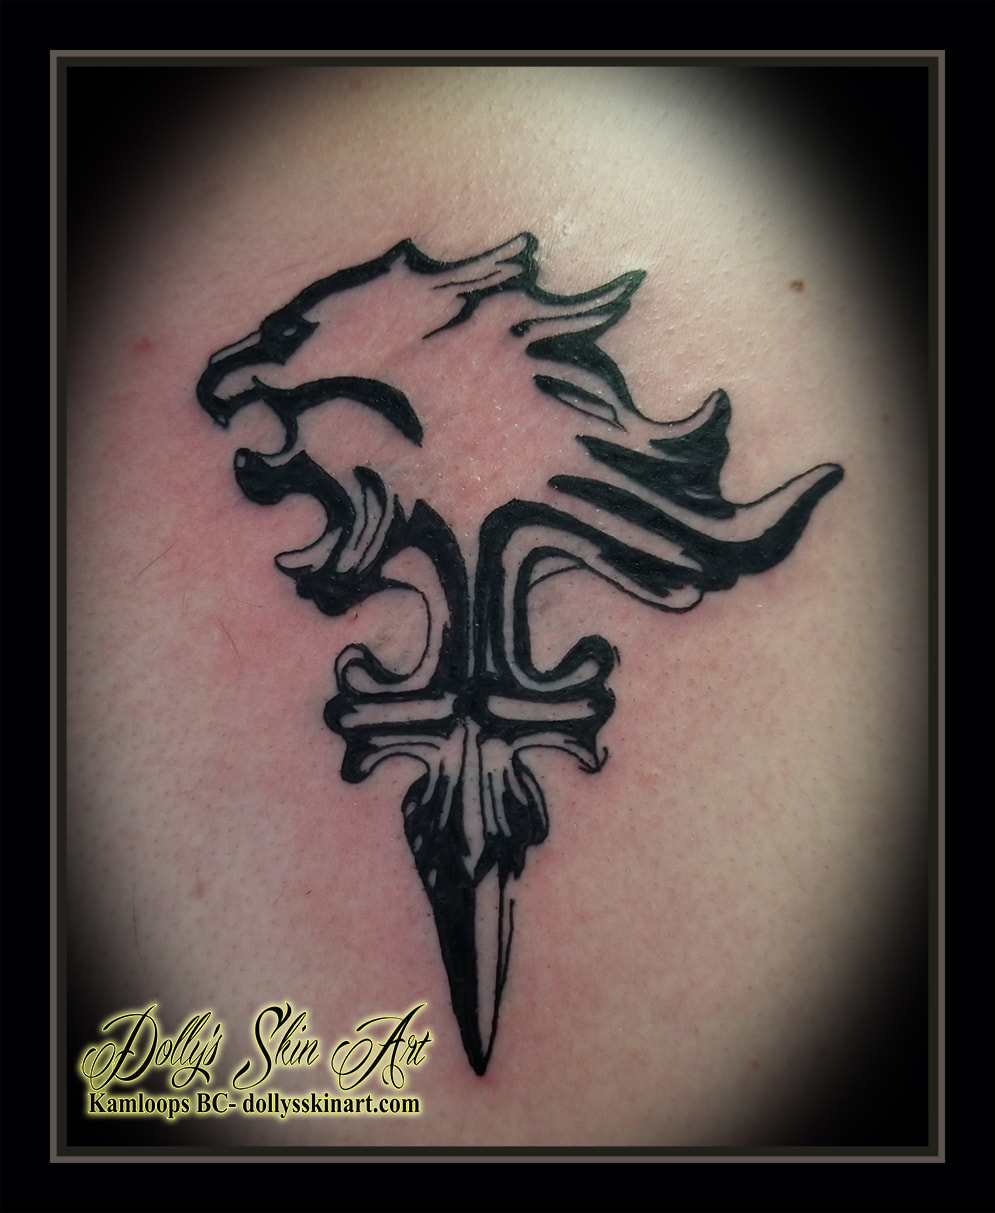 lion heart tattoo final fantasy viii black tribal emblem weapon tattoo kamloops dolly's skin art